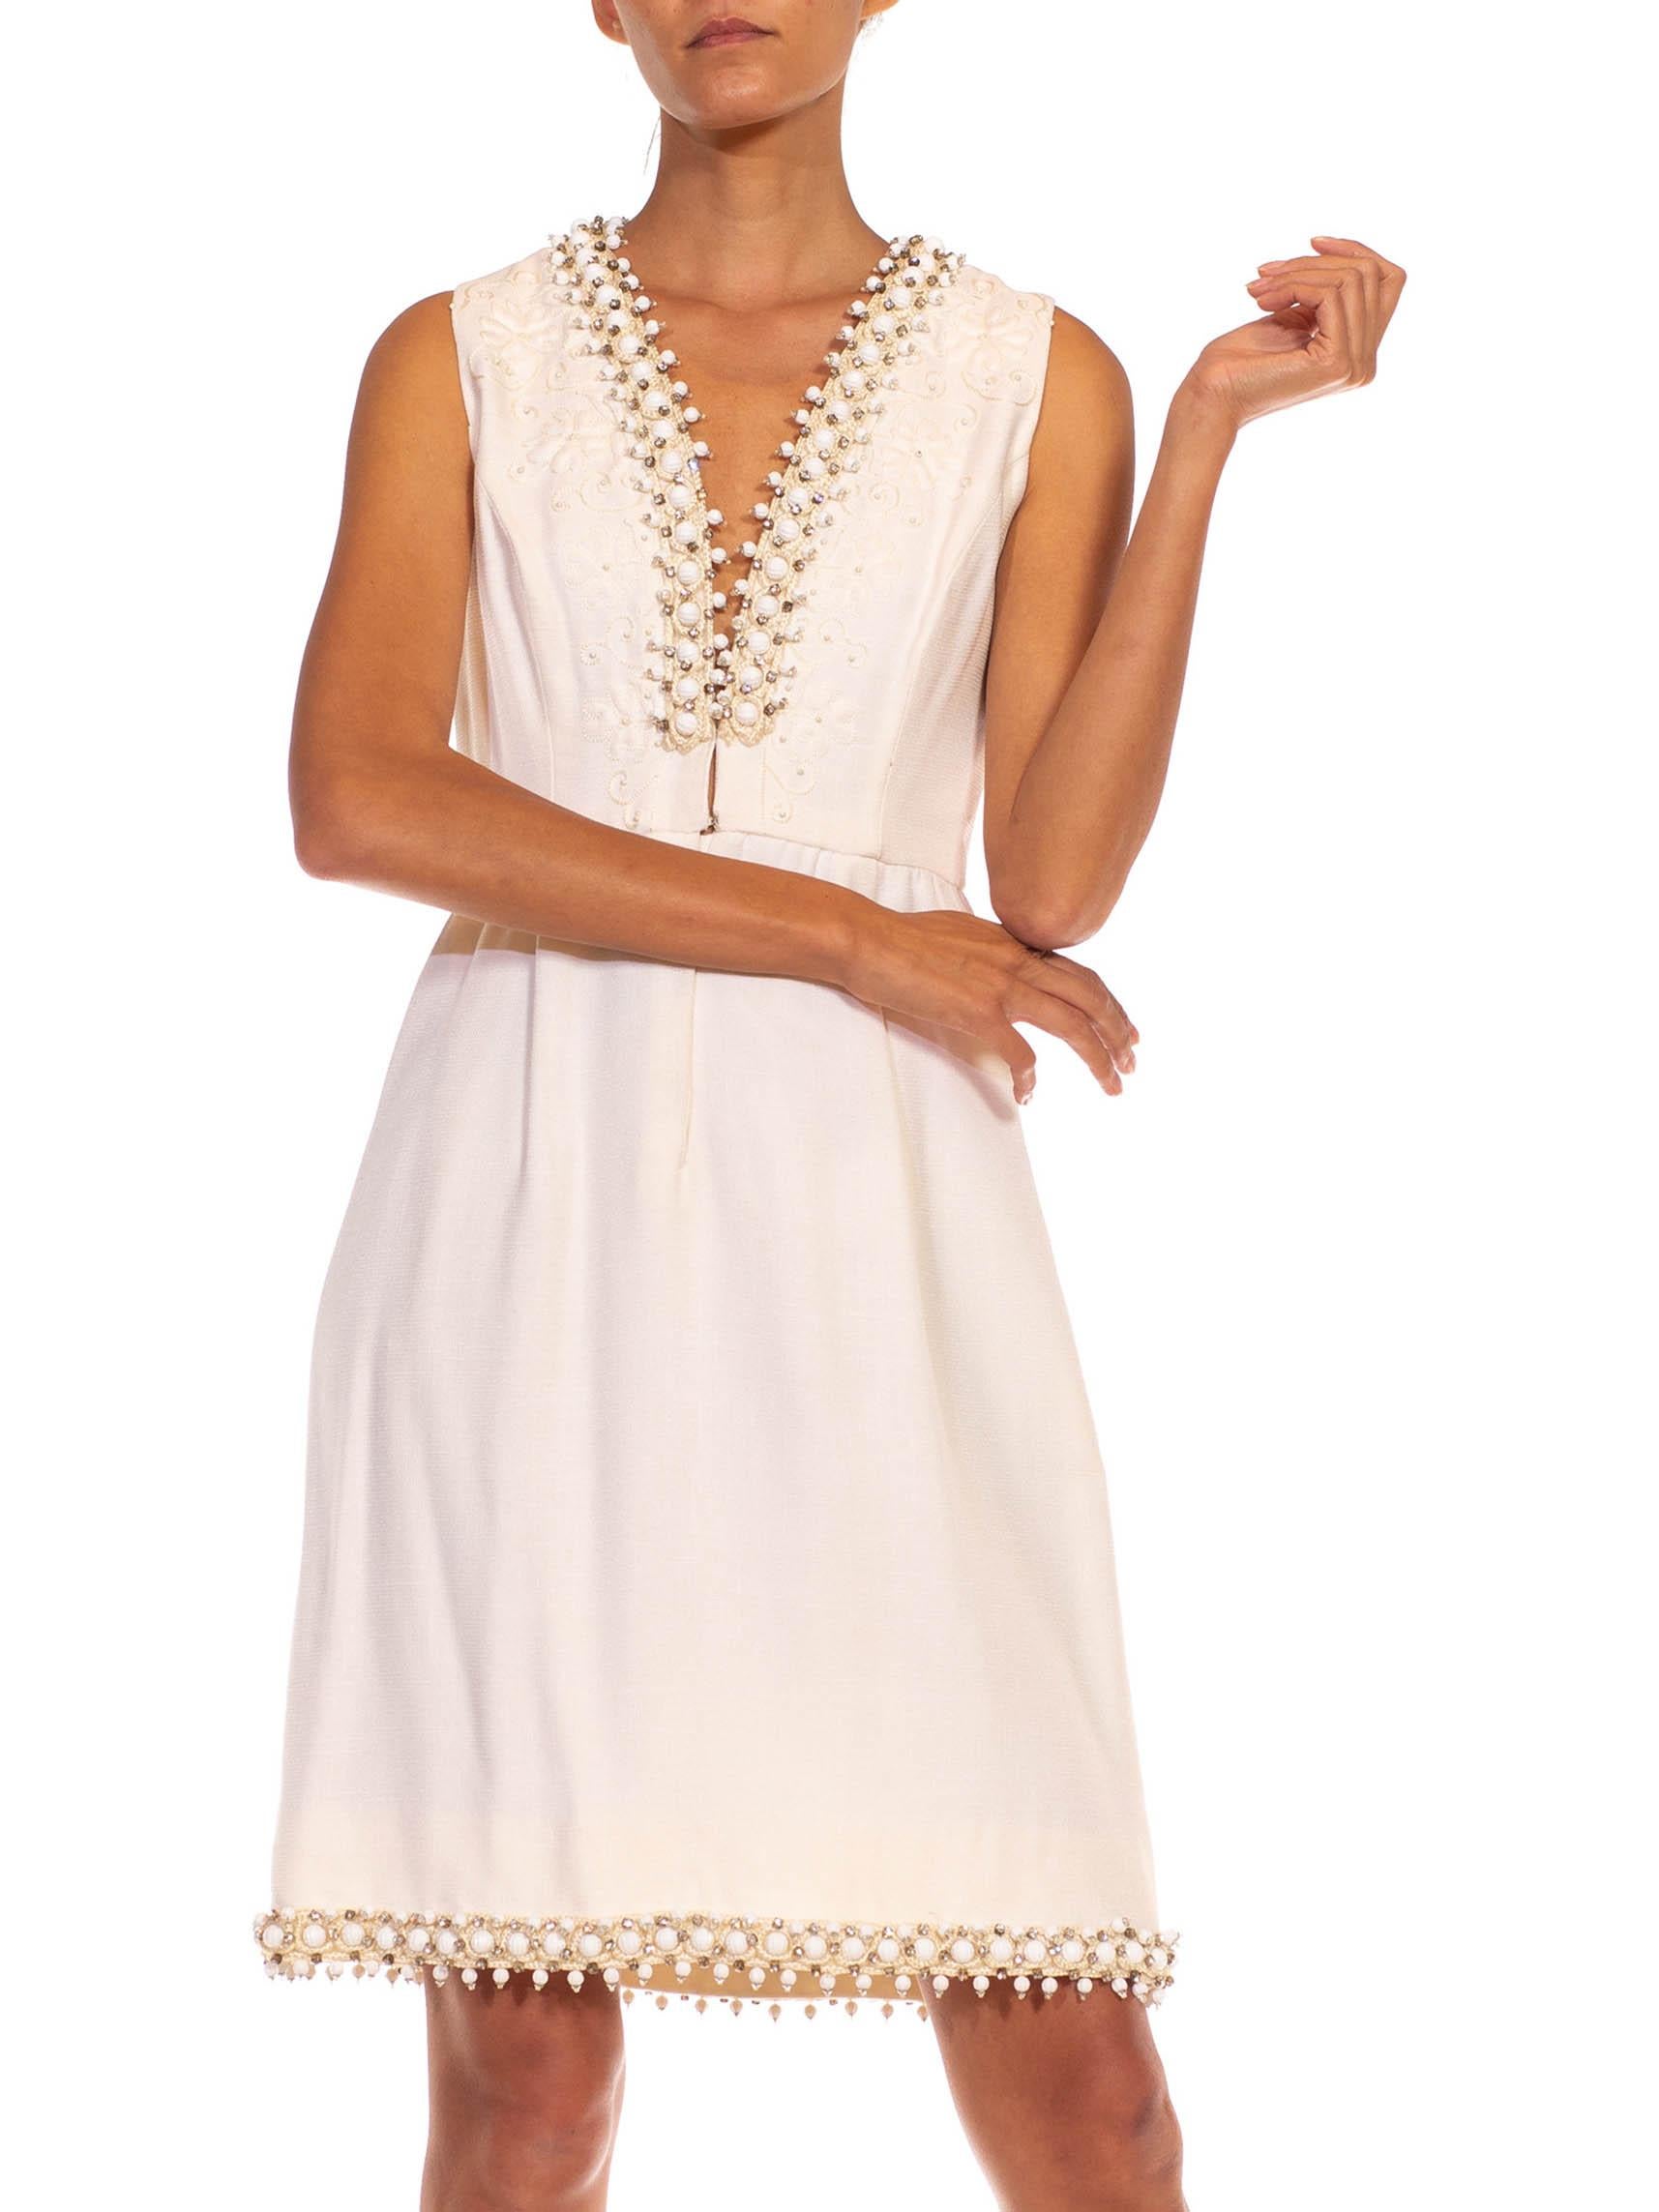 1960S OSCAR DE LA RENTA White Wool Blend Plunging V Neck Mod Dress With Crystals For Sale 2